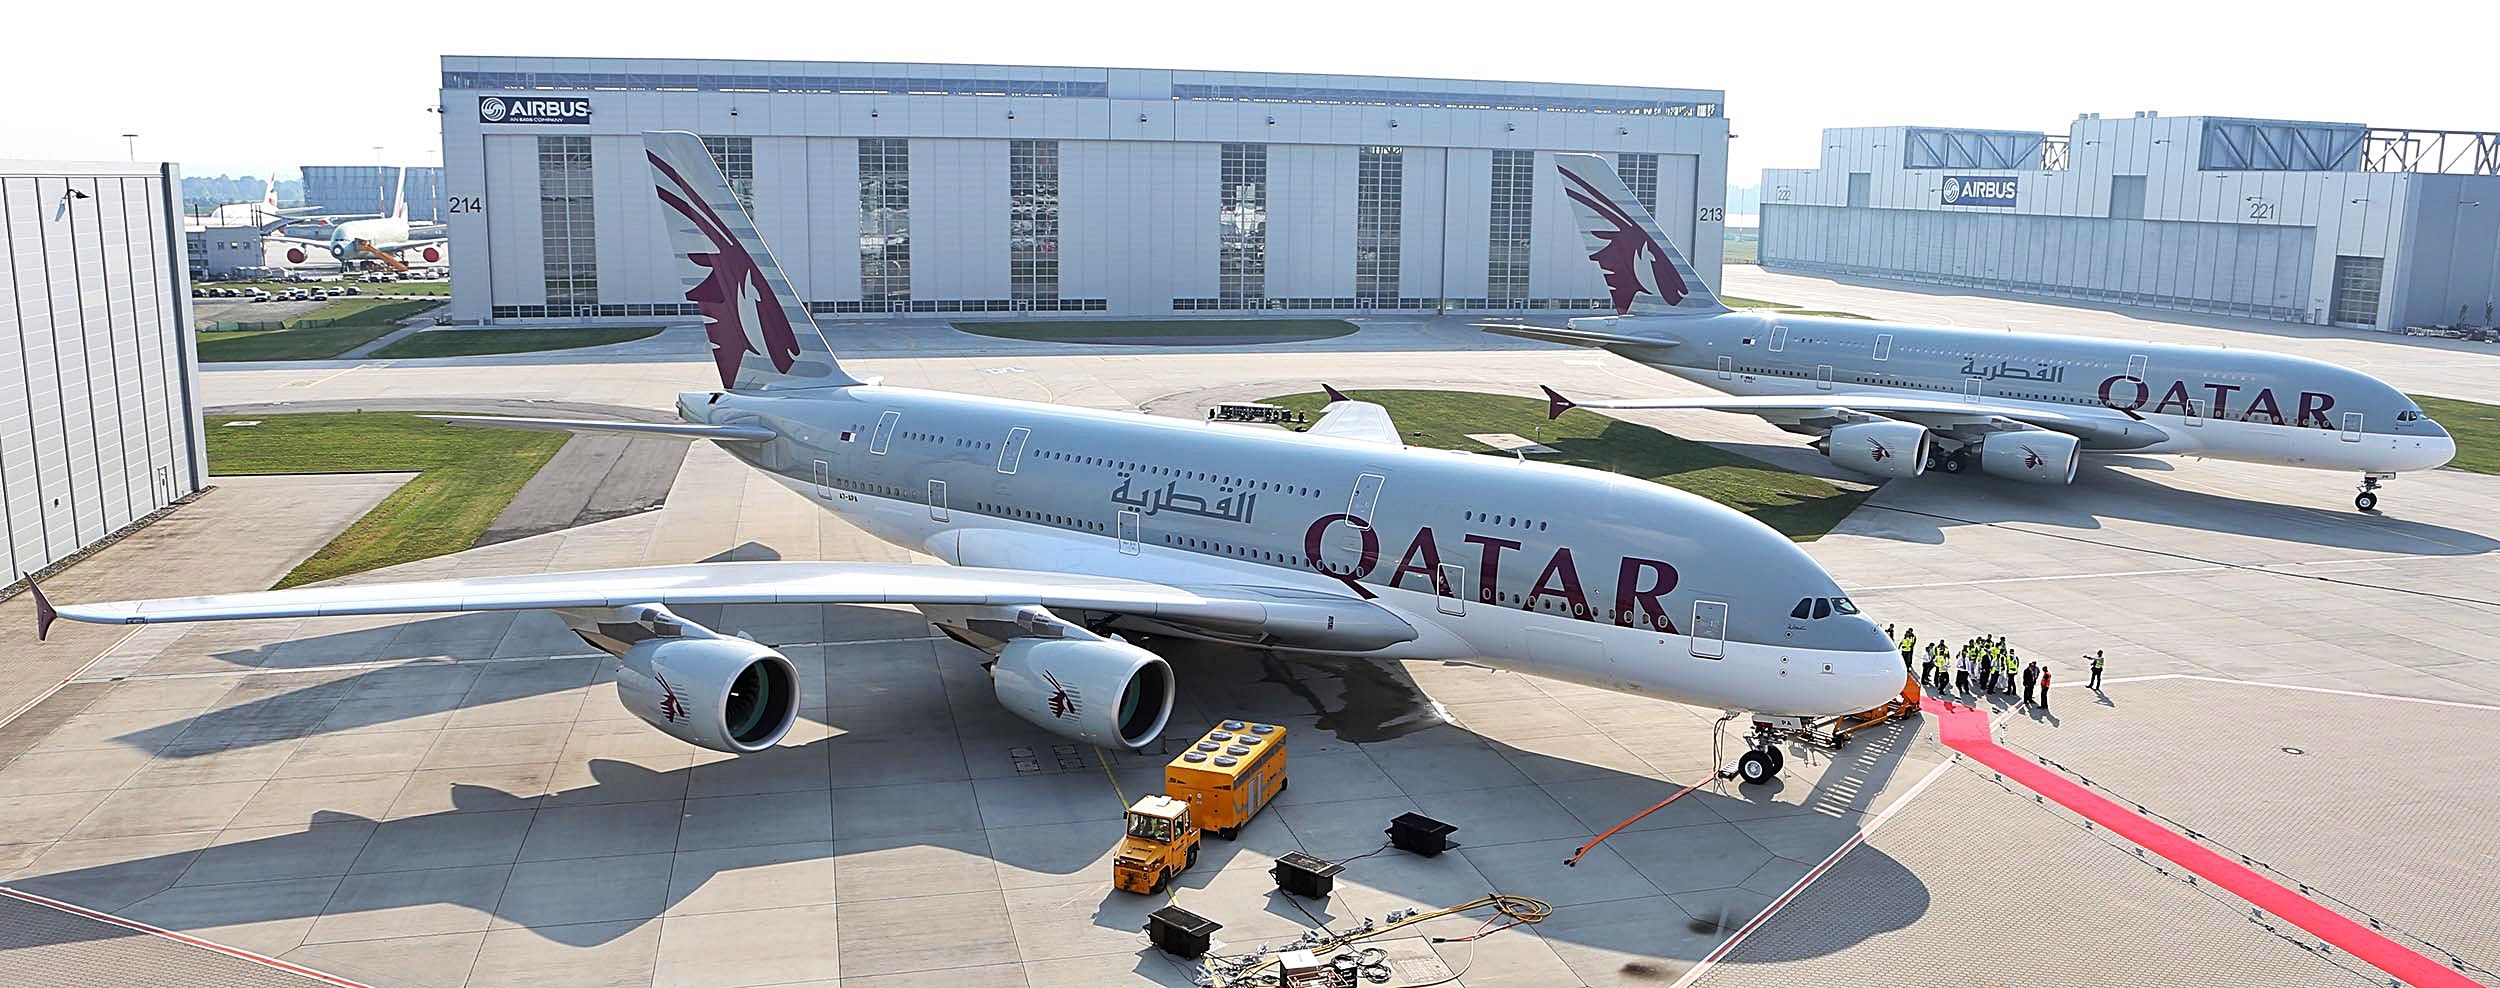 Qatar Airways Airbus A 380